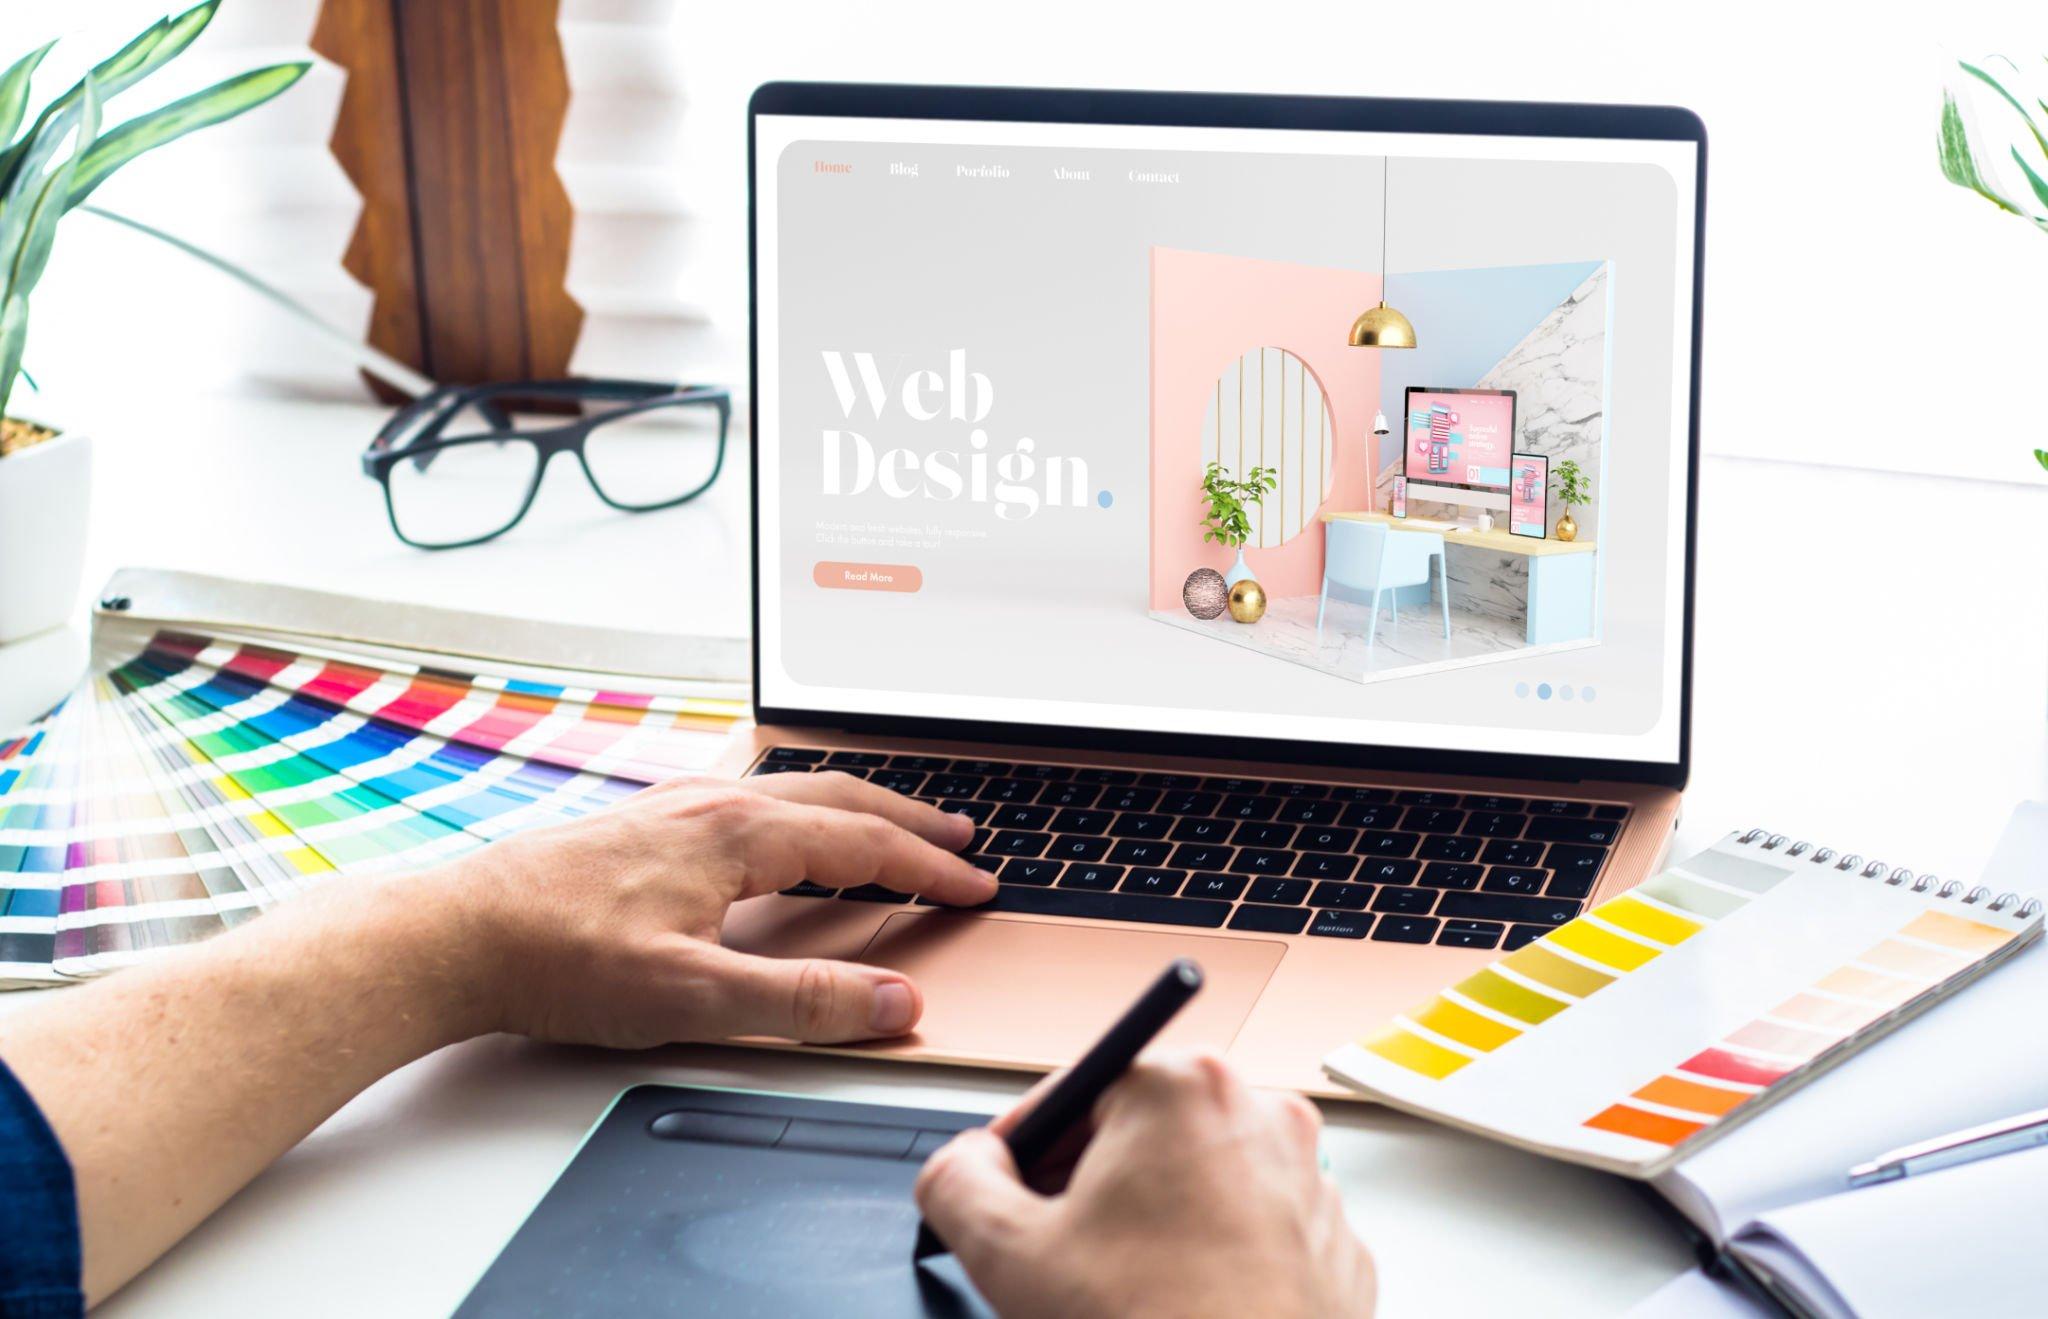 Web Design in E-commerce Business